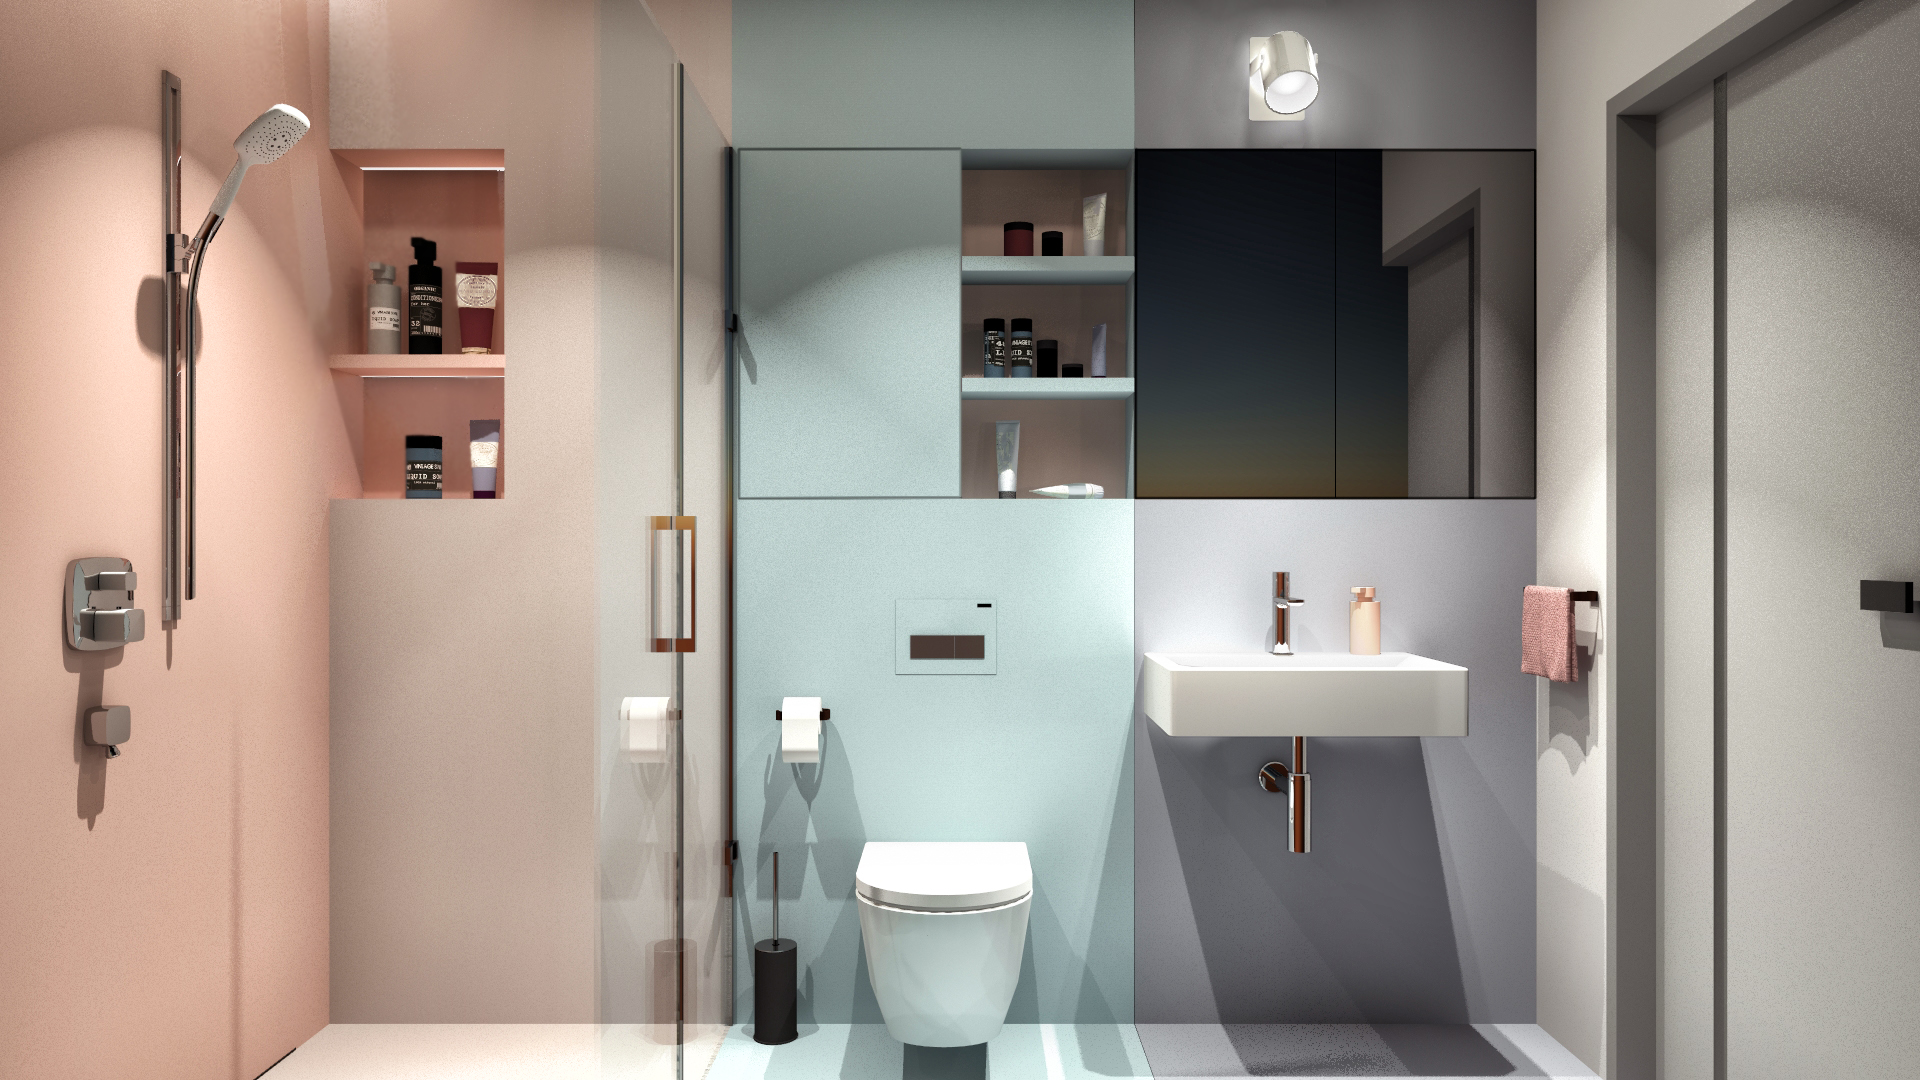 Bathroom – a colorful interior in a delicate way